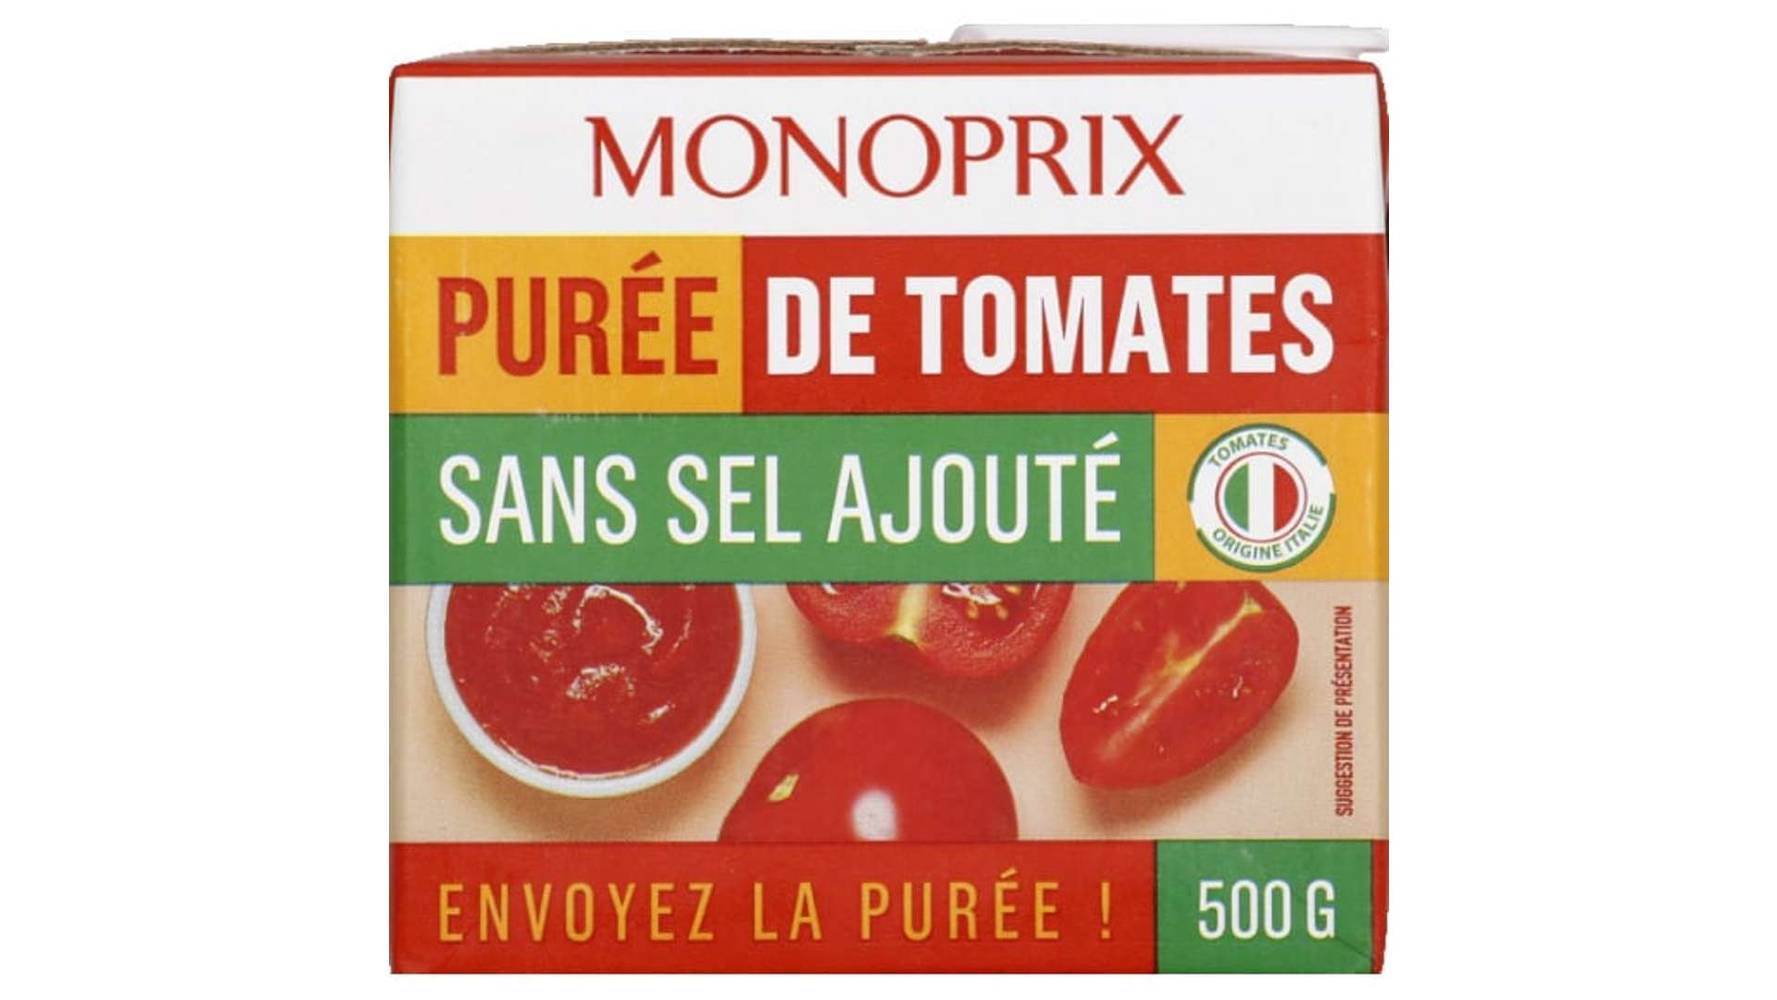 Monoprix Purée de Tomates Sans Sel Ajouté La brique de 500g